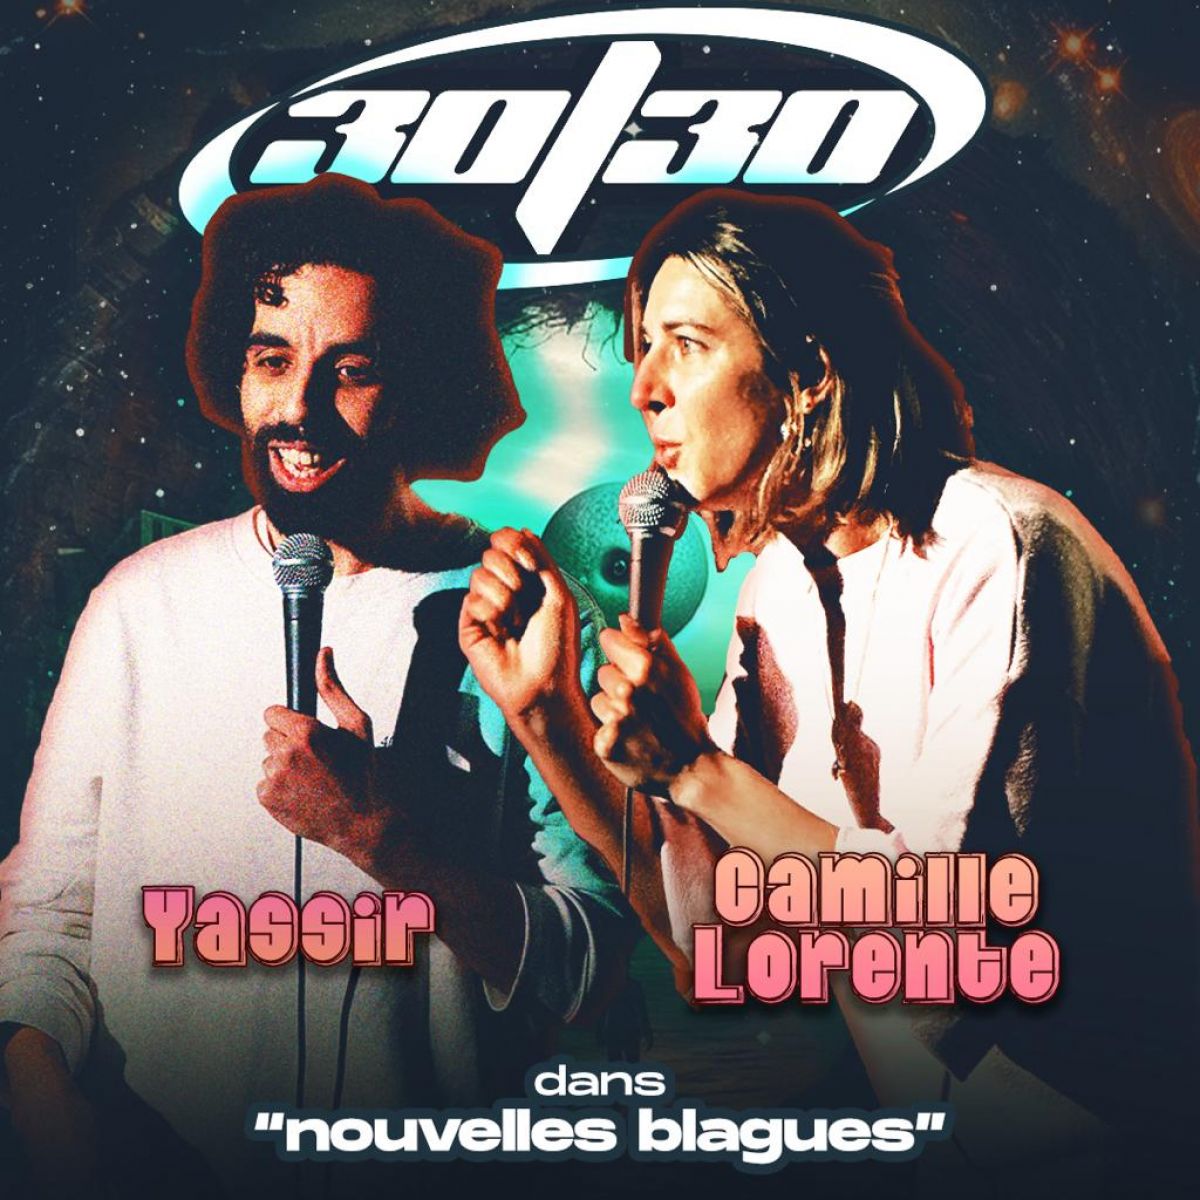 Camille Lorente x Yassir dans "Nouvelles Blagues"